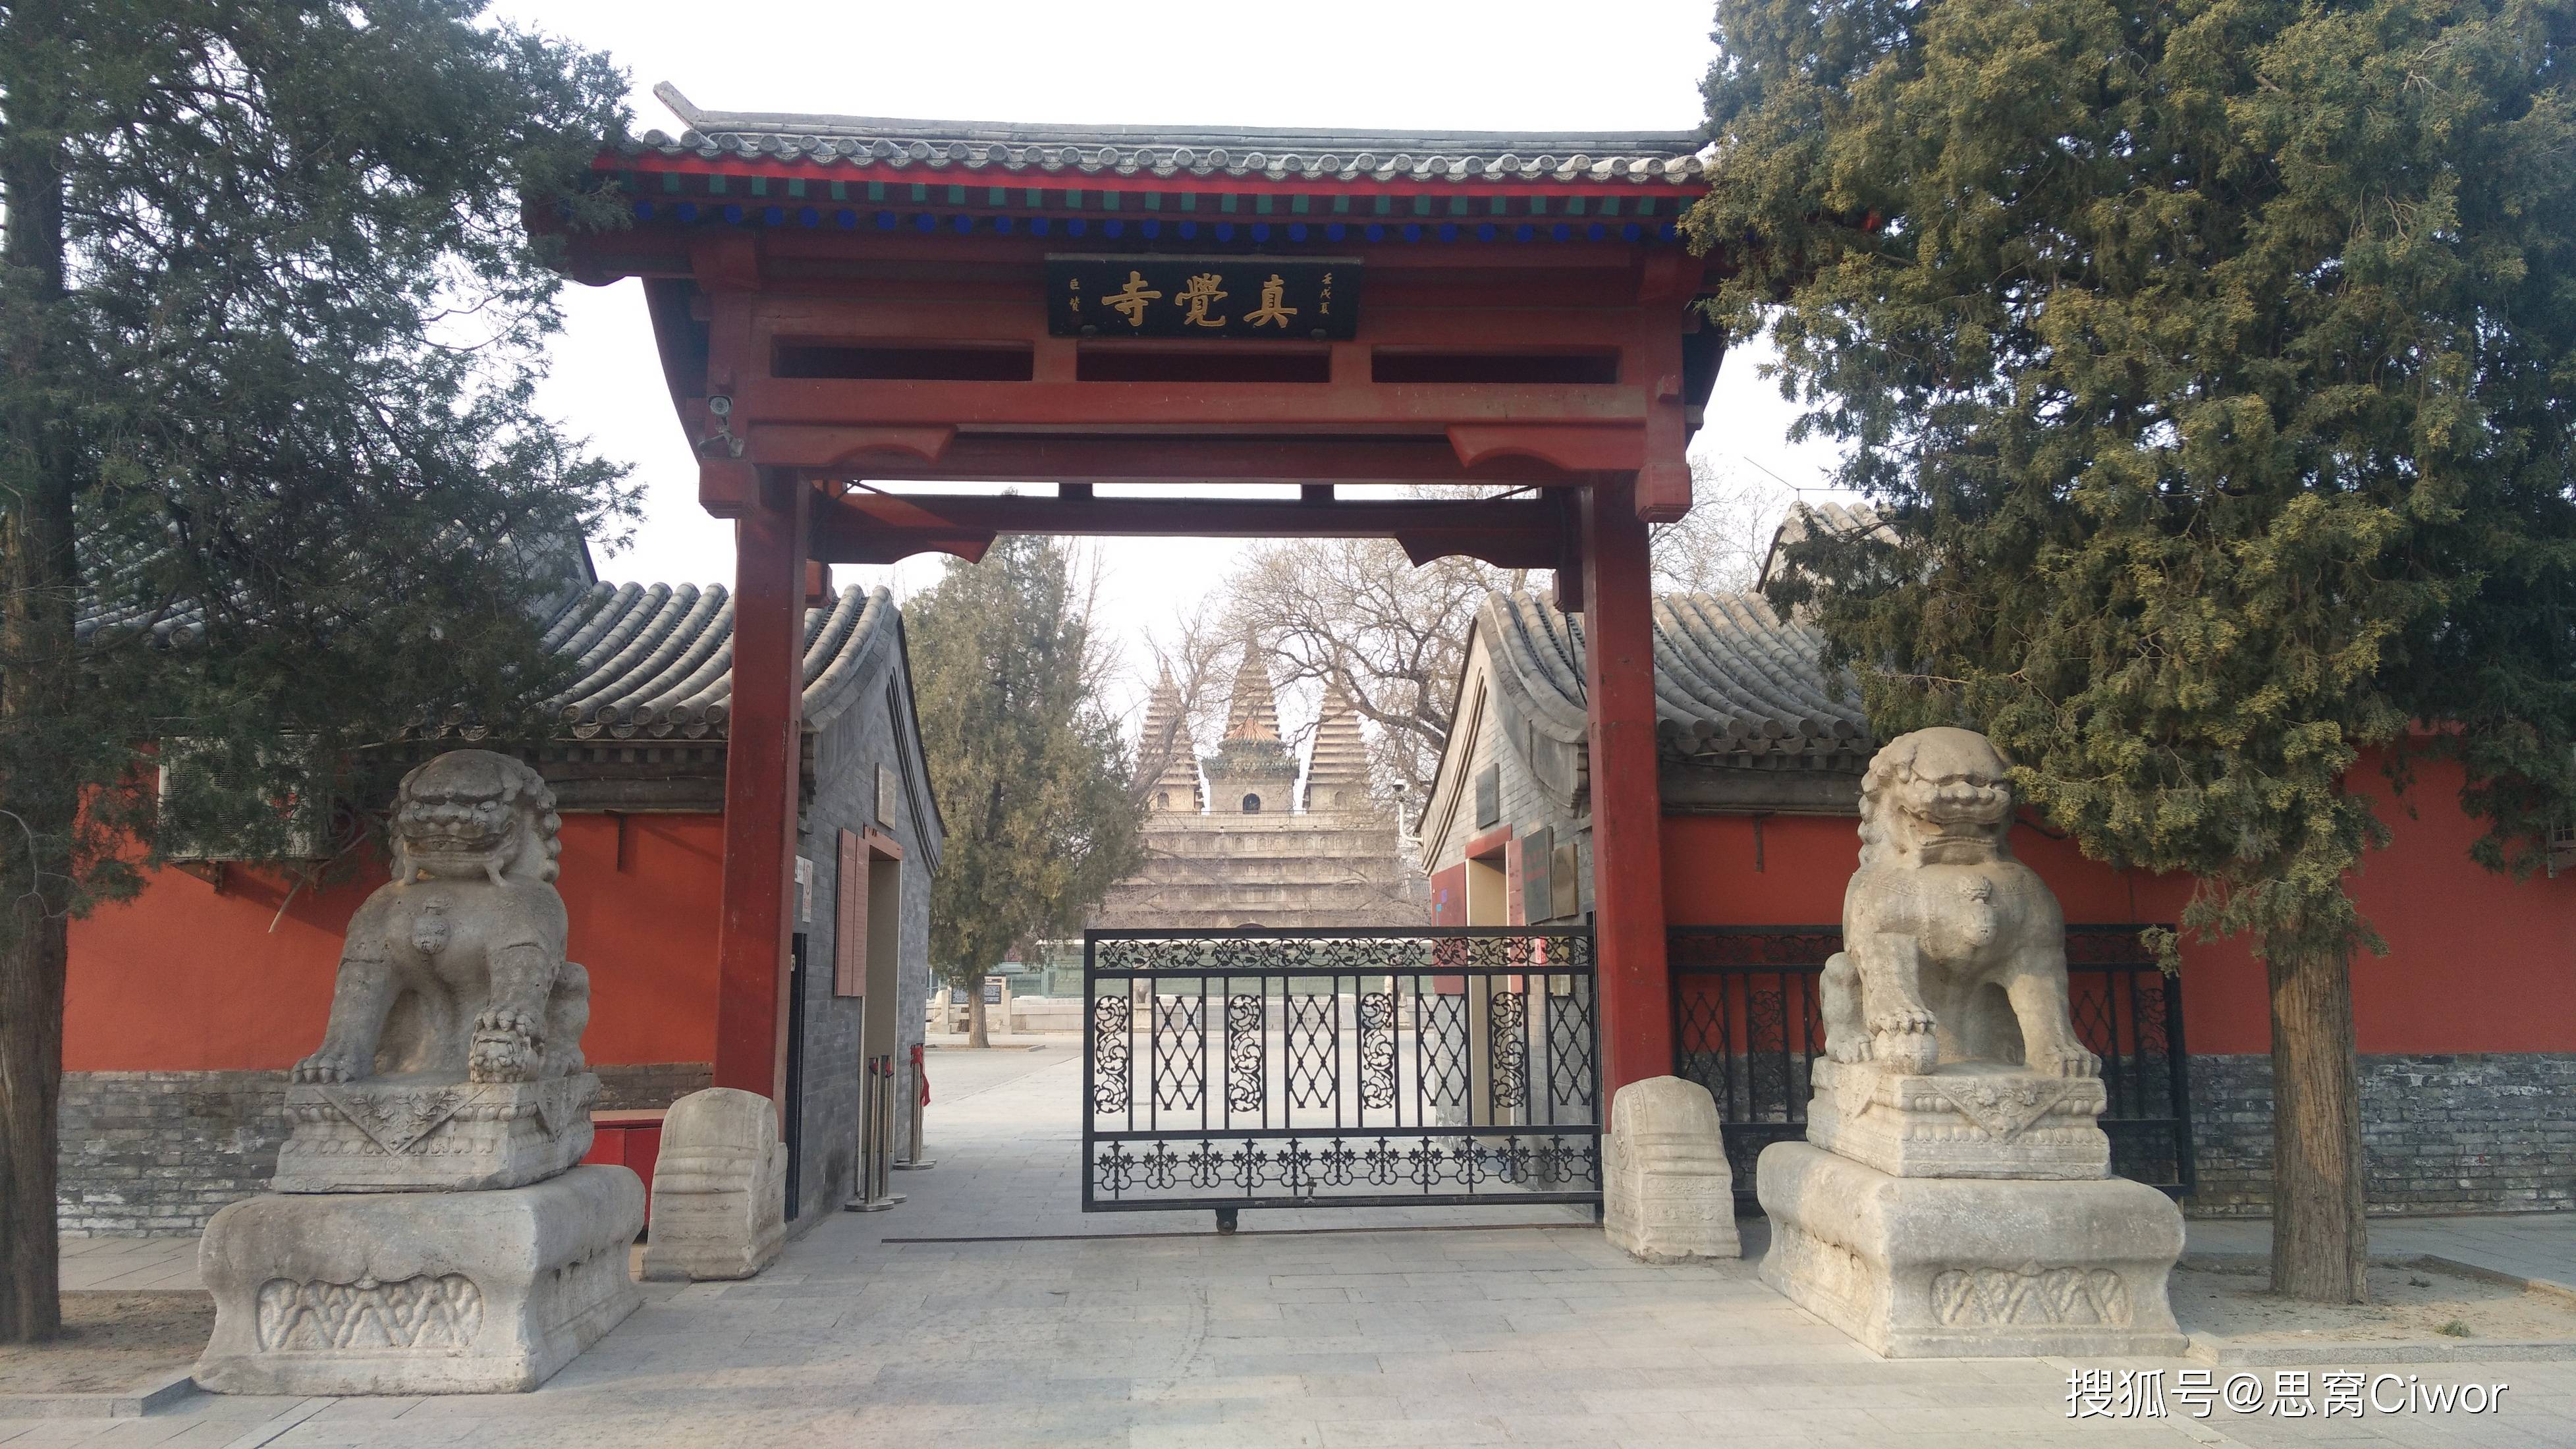 思窝花脸：五塔寺真觉寺，北京石刻艺术博物馆，感受石刻历史文化